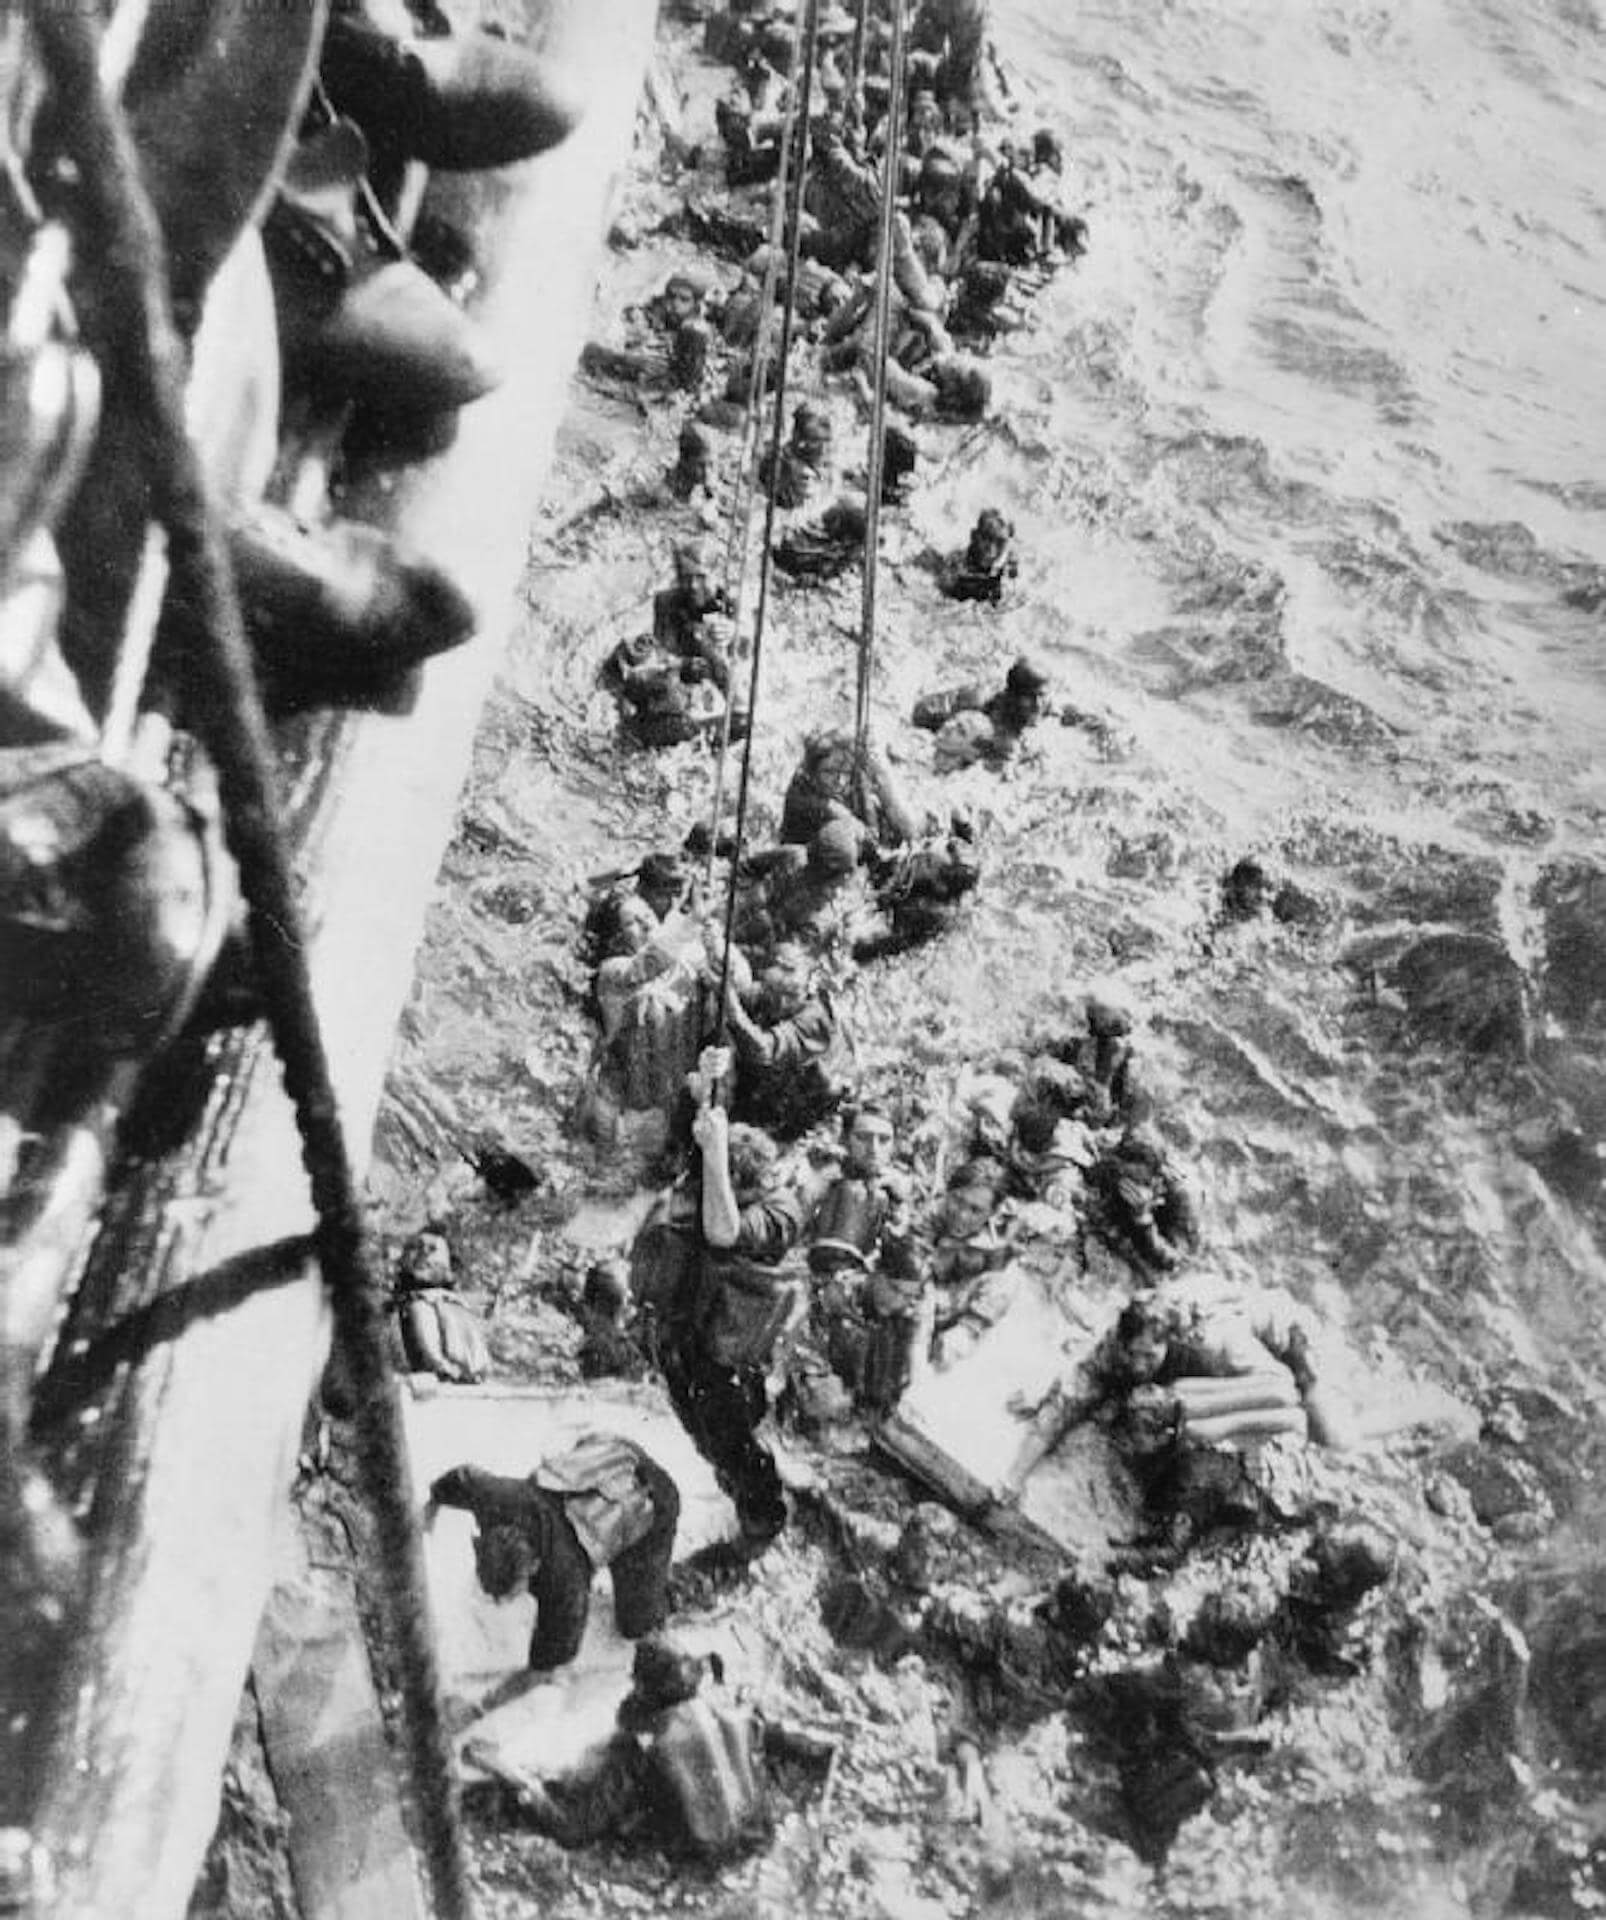 Supervivientes acorazado Bismarck